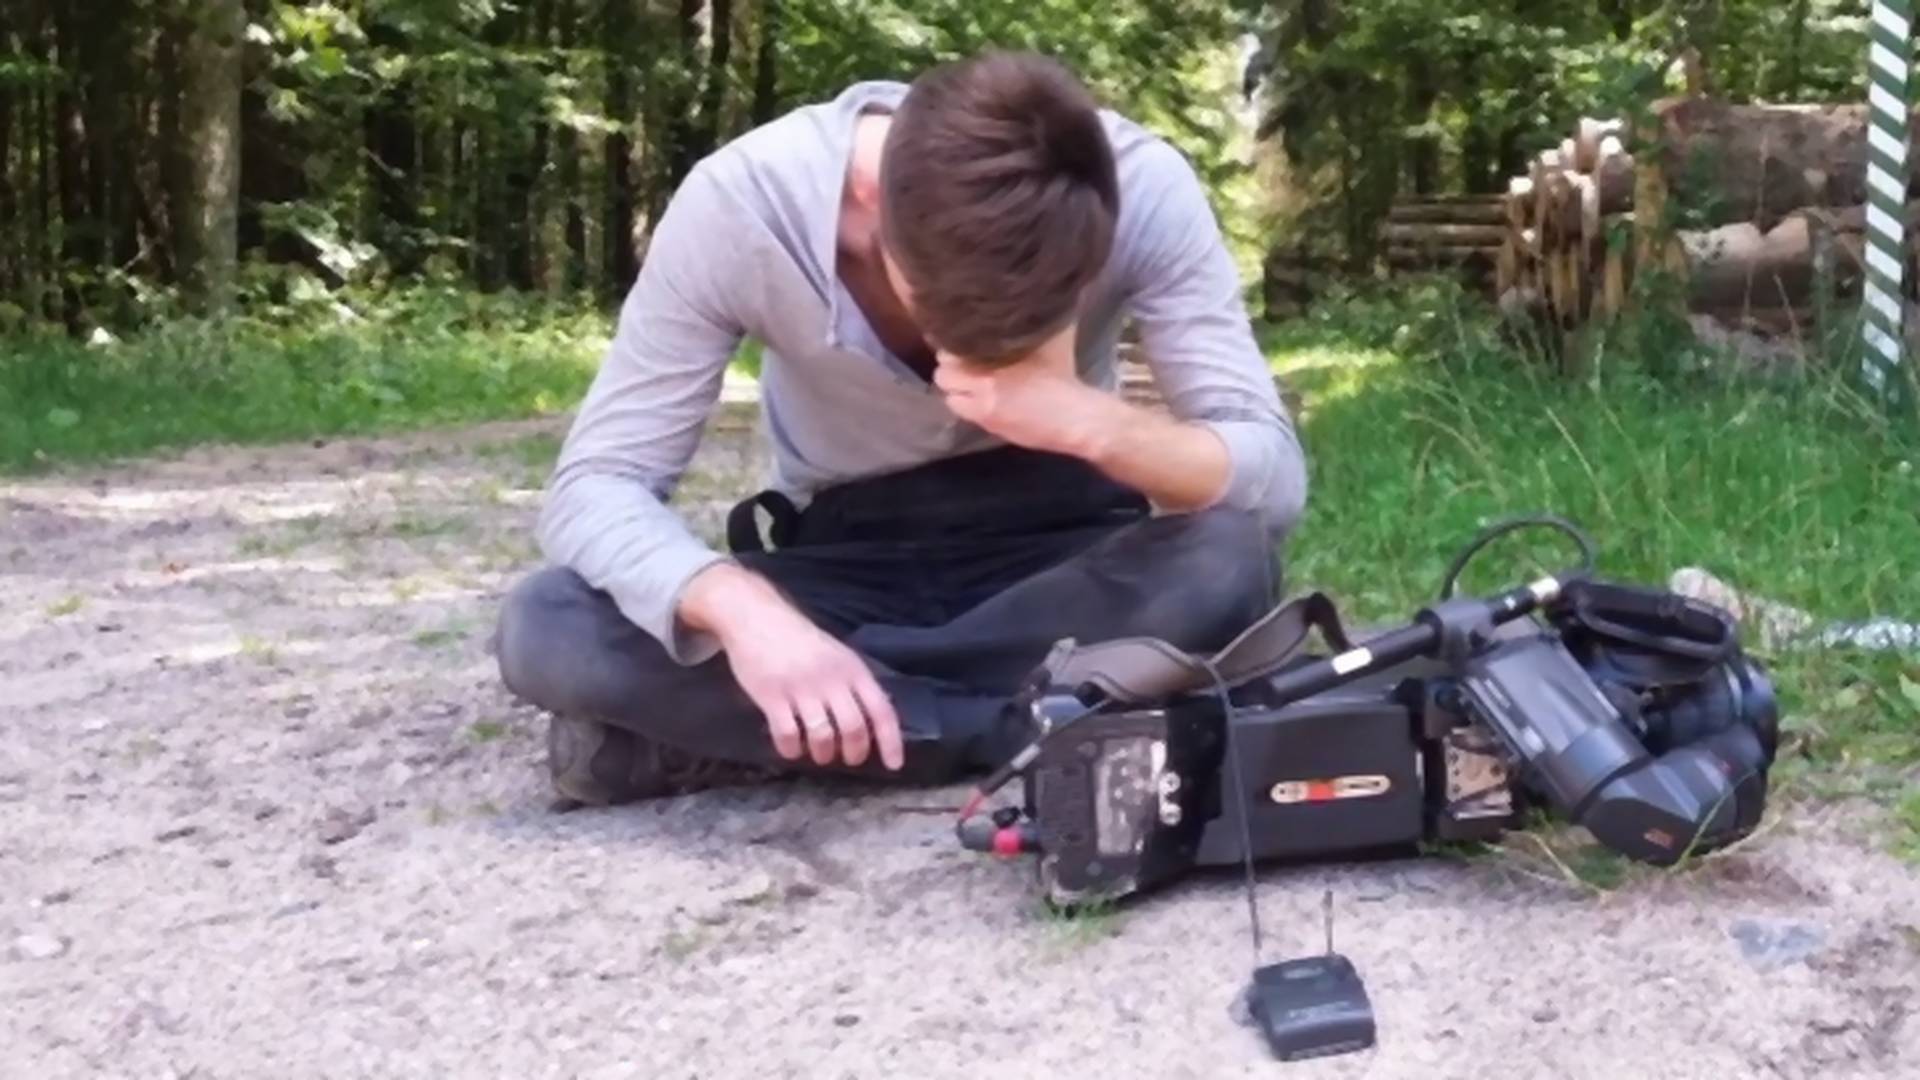 Pobili operatora Polsatu i zniszczyli kamerę. Przemoc w Puszczy Białowieskiej